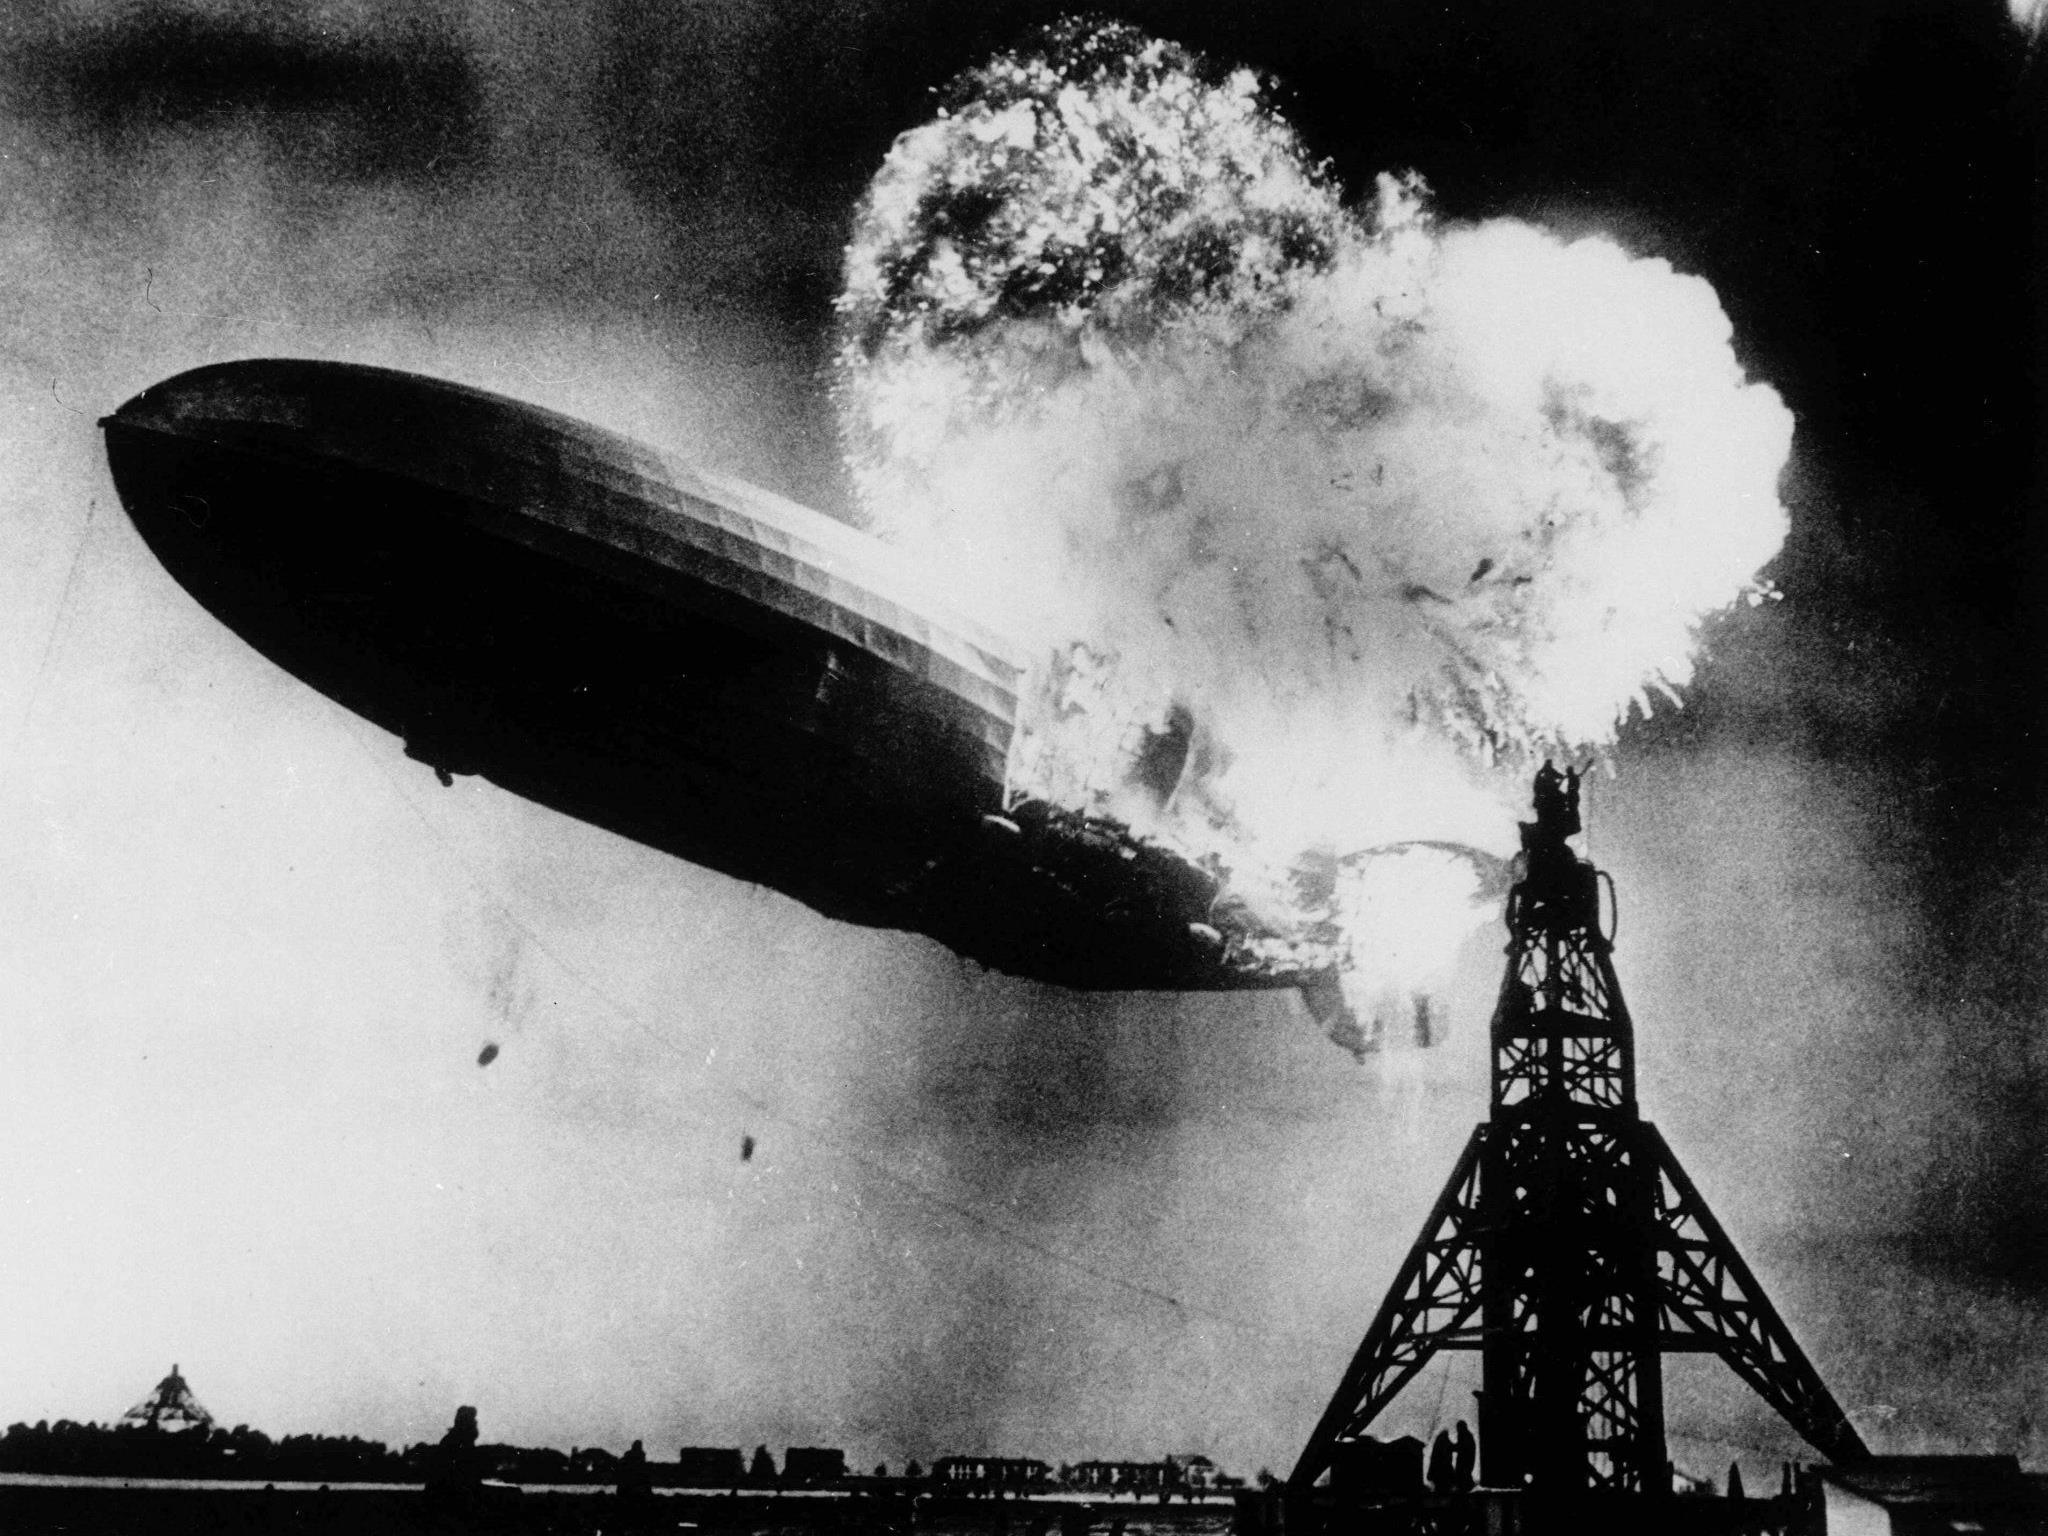 6. Mai 1937 um 19.25 Uhr: Die Hindenburg explodiert. Vermutlich ist eine elektrische Ladung schuld, ausgelöst durch die nassen, abgeworfenen Landetaue.